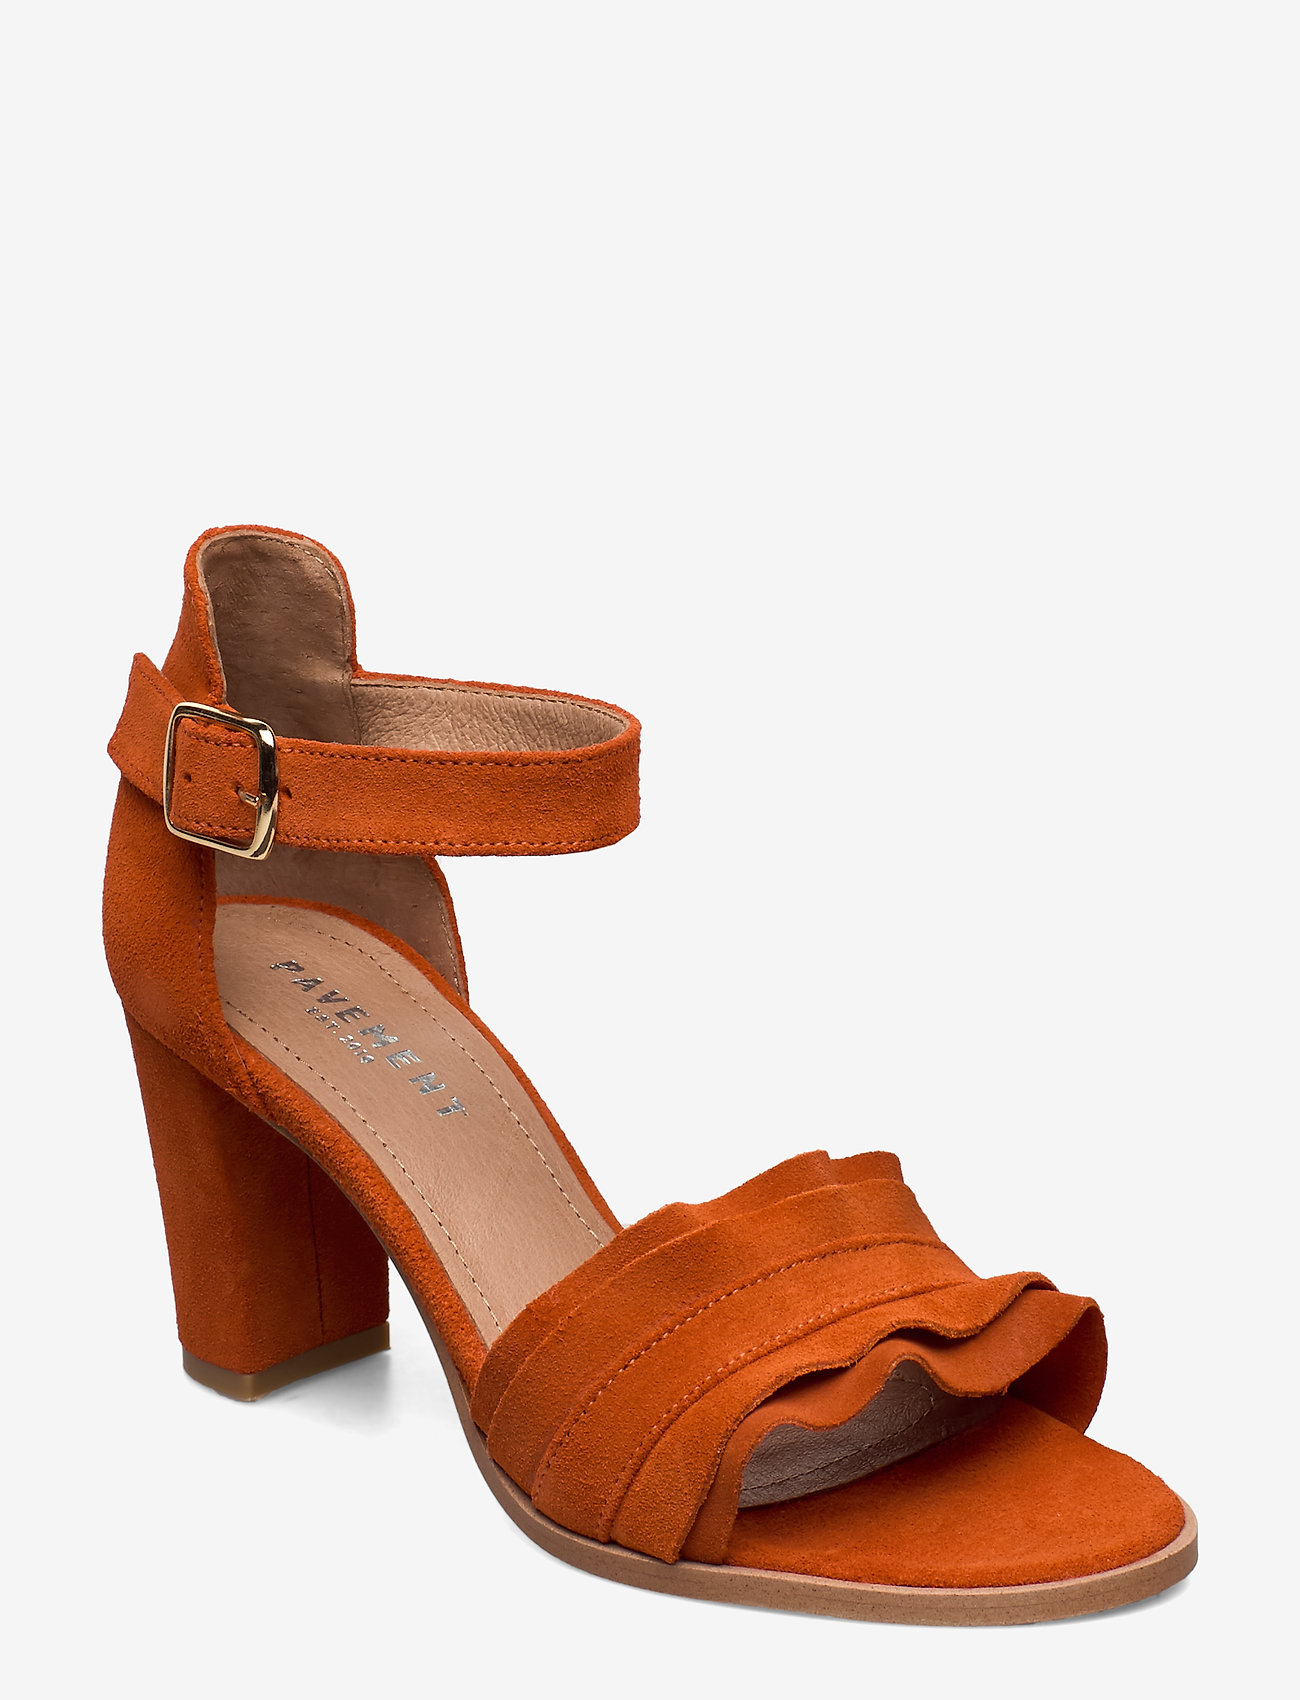 orange suede heels